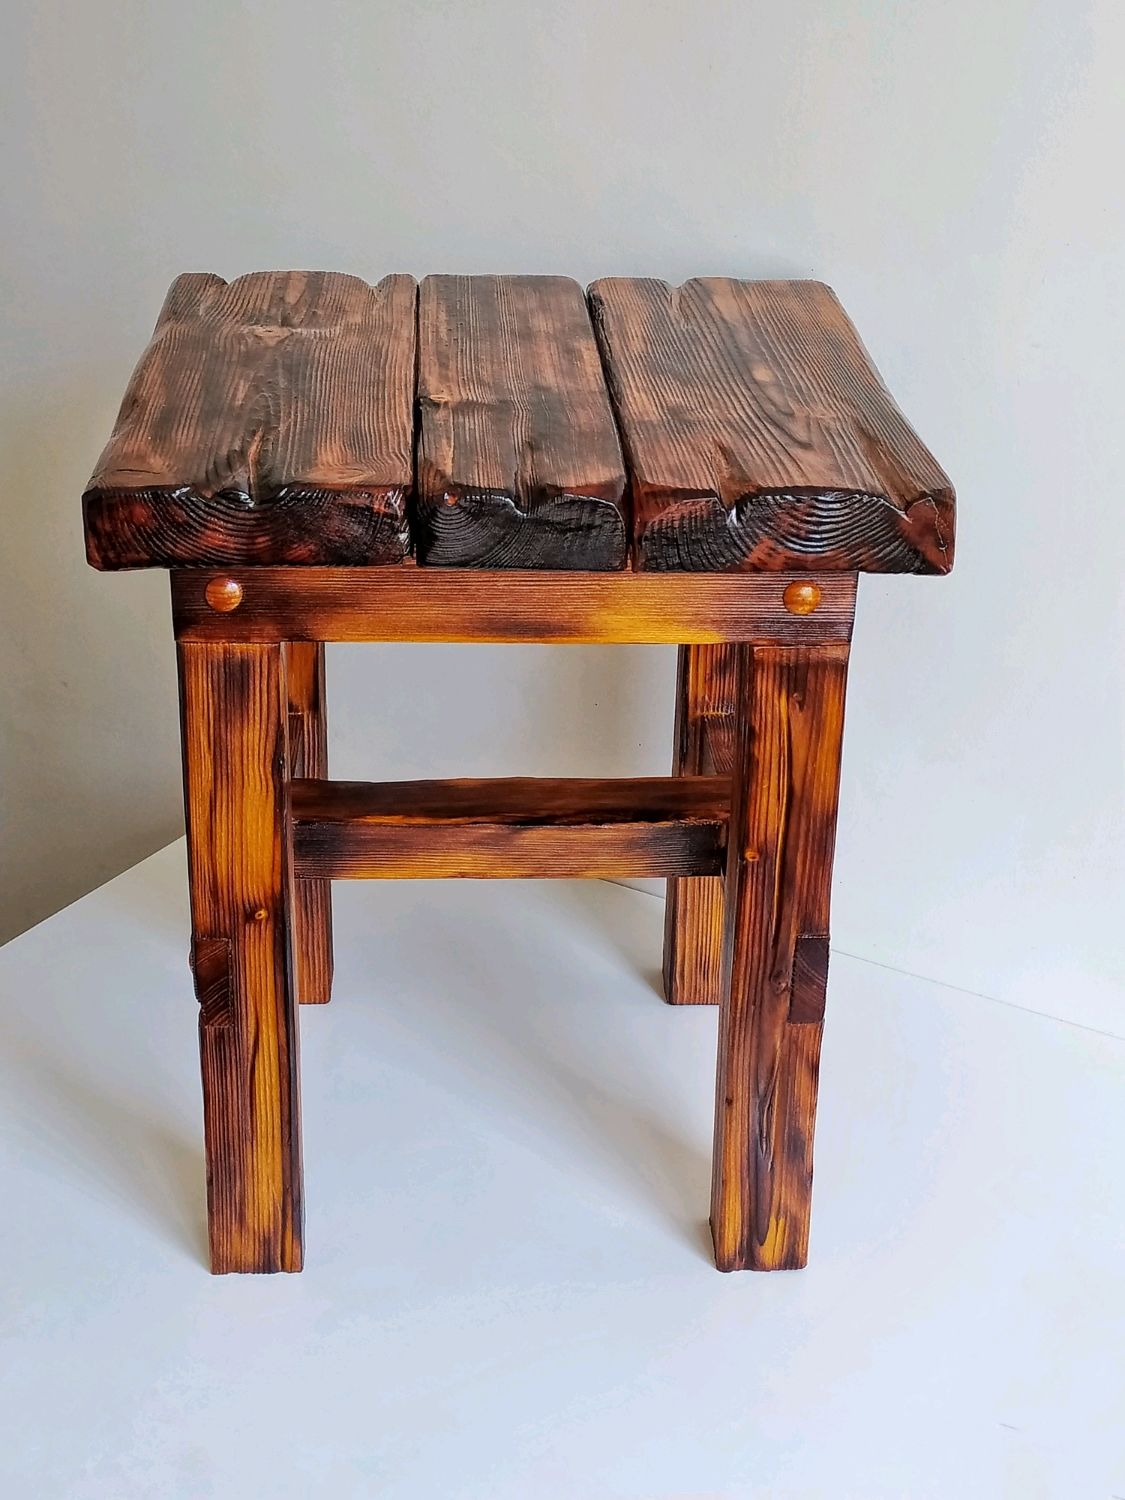 стулья ручной работы из дерева